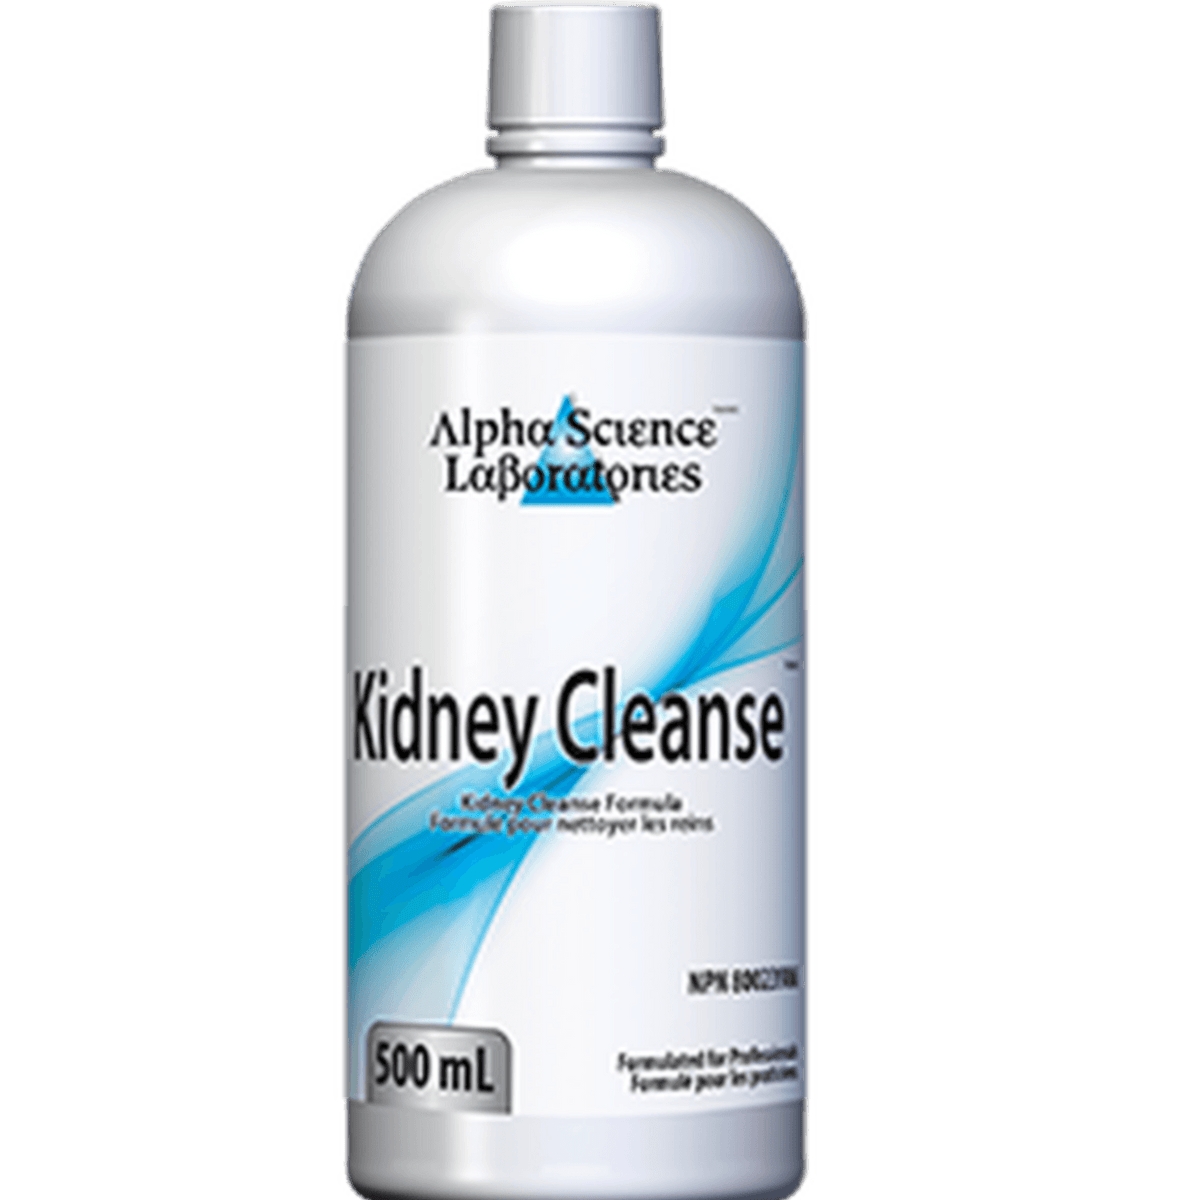 Alpha Science Kidney Cleanse 500 mL Supplements - Bladder & Kidney Health at Village Vitamin Store